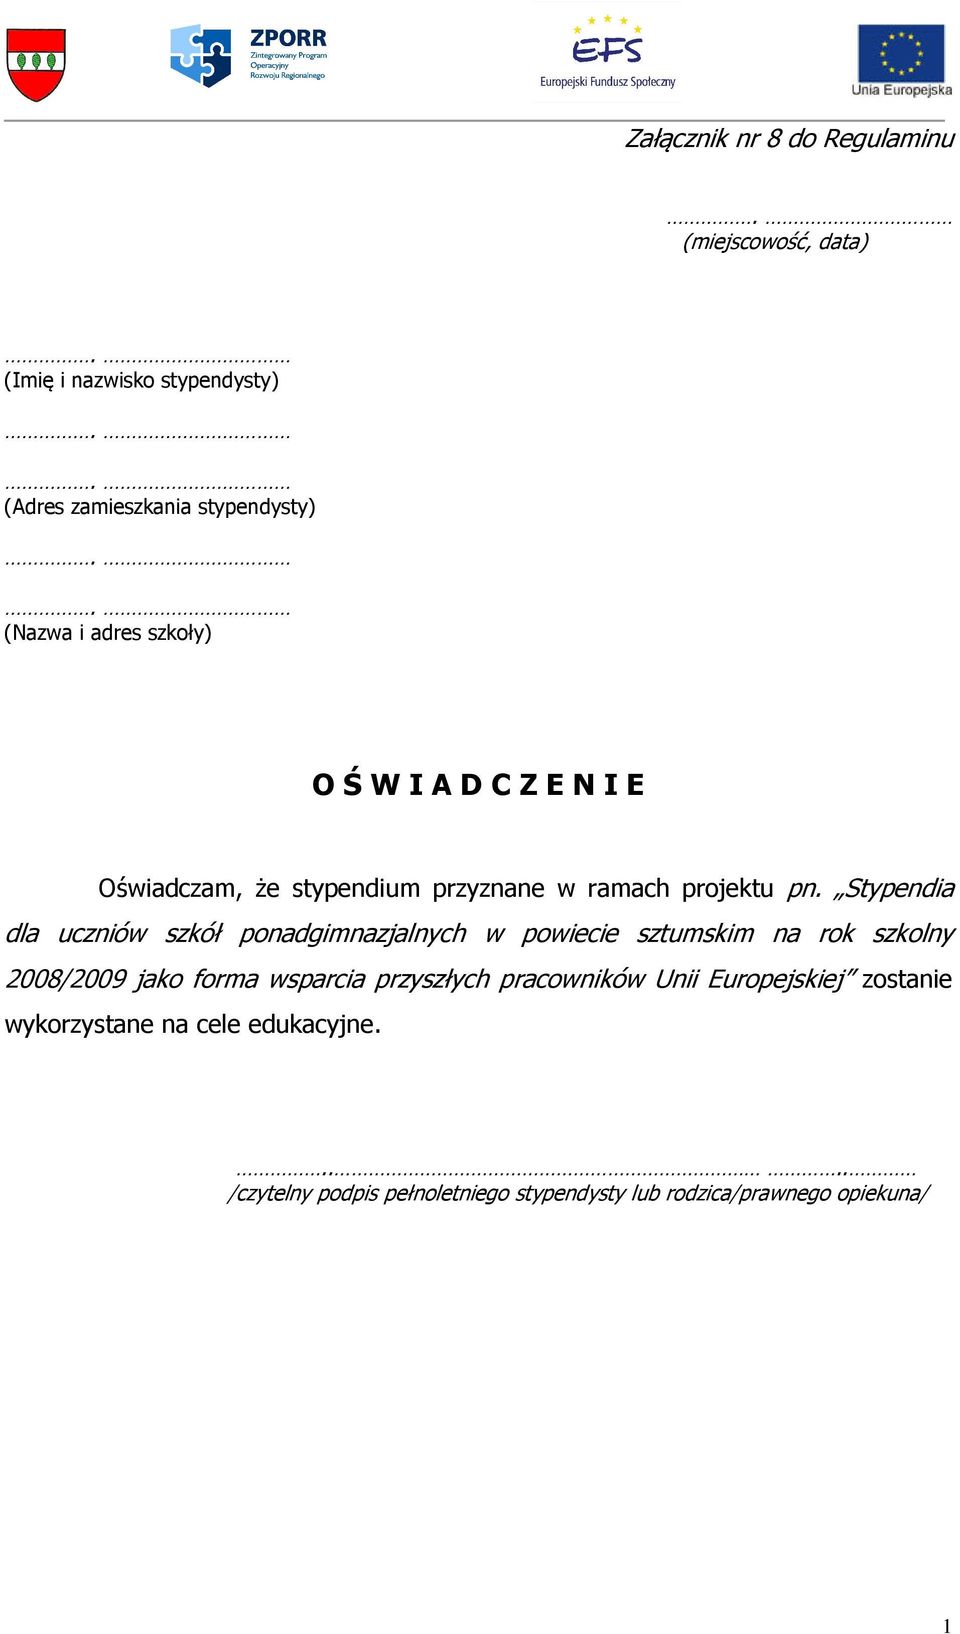 Stypendia dla uczniów szkół ponadgimnazjalnych w powiecie sztumskim na rok szkolny 2008/2009 jako forma wsparcia przyszłych